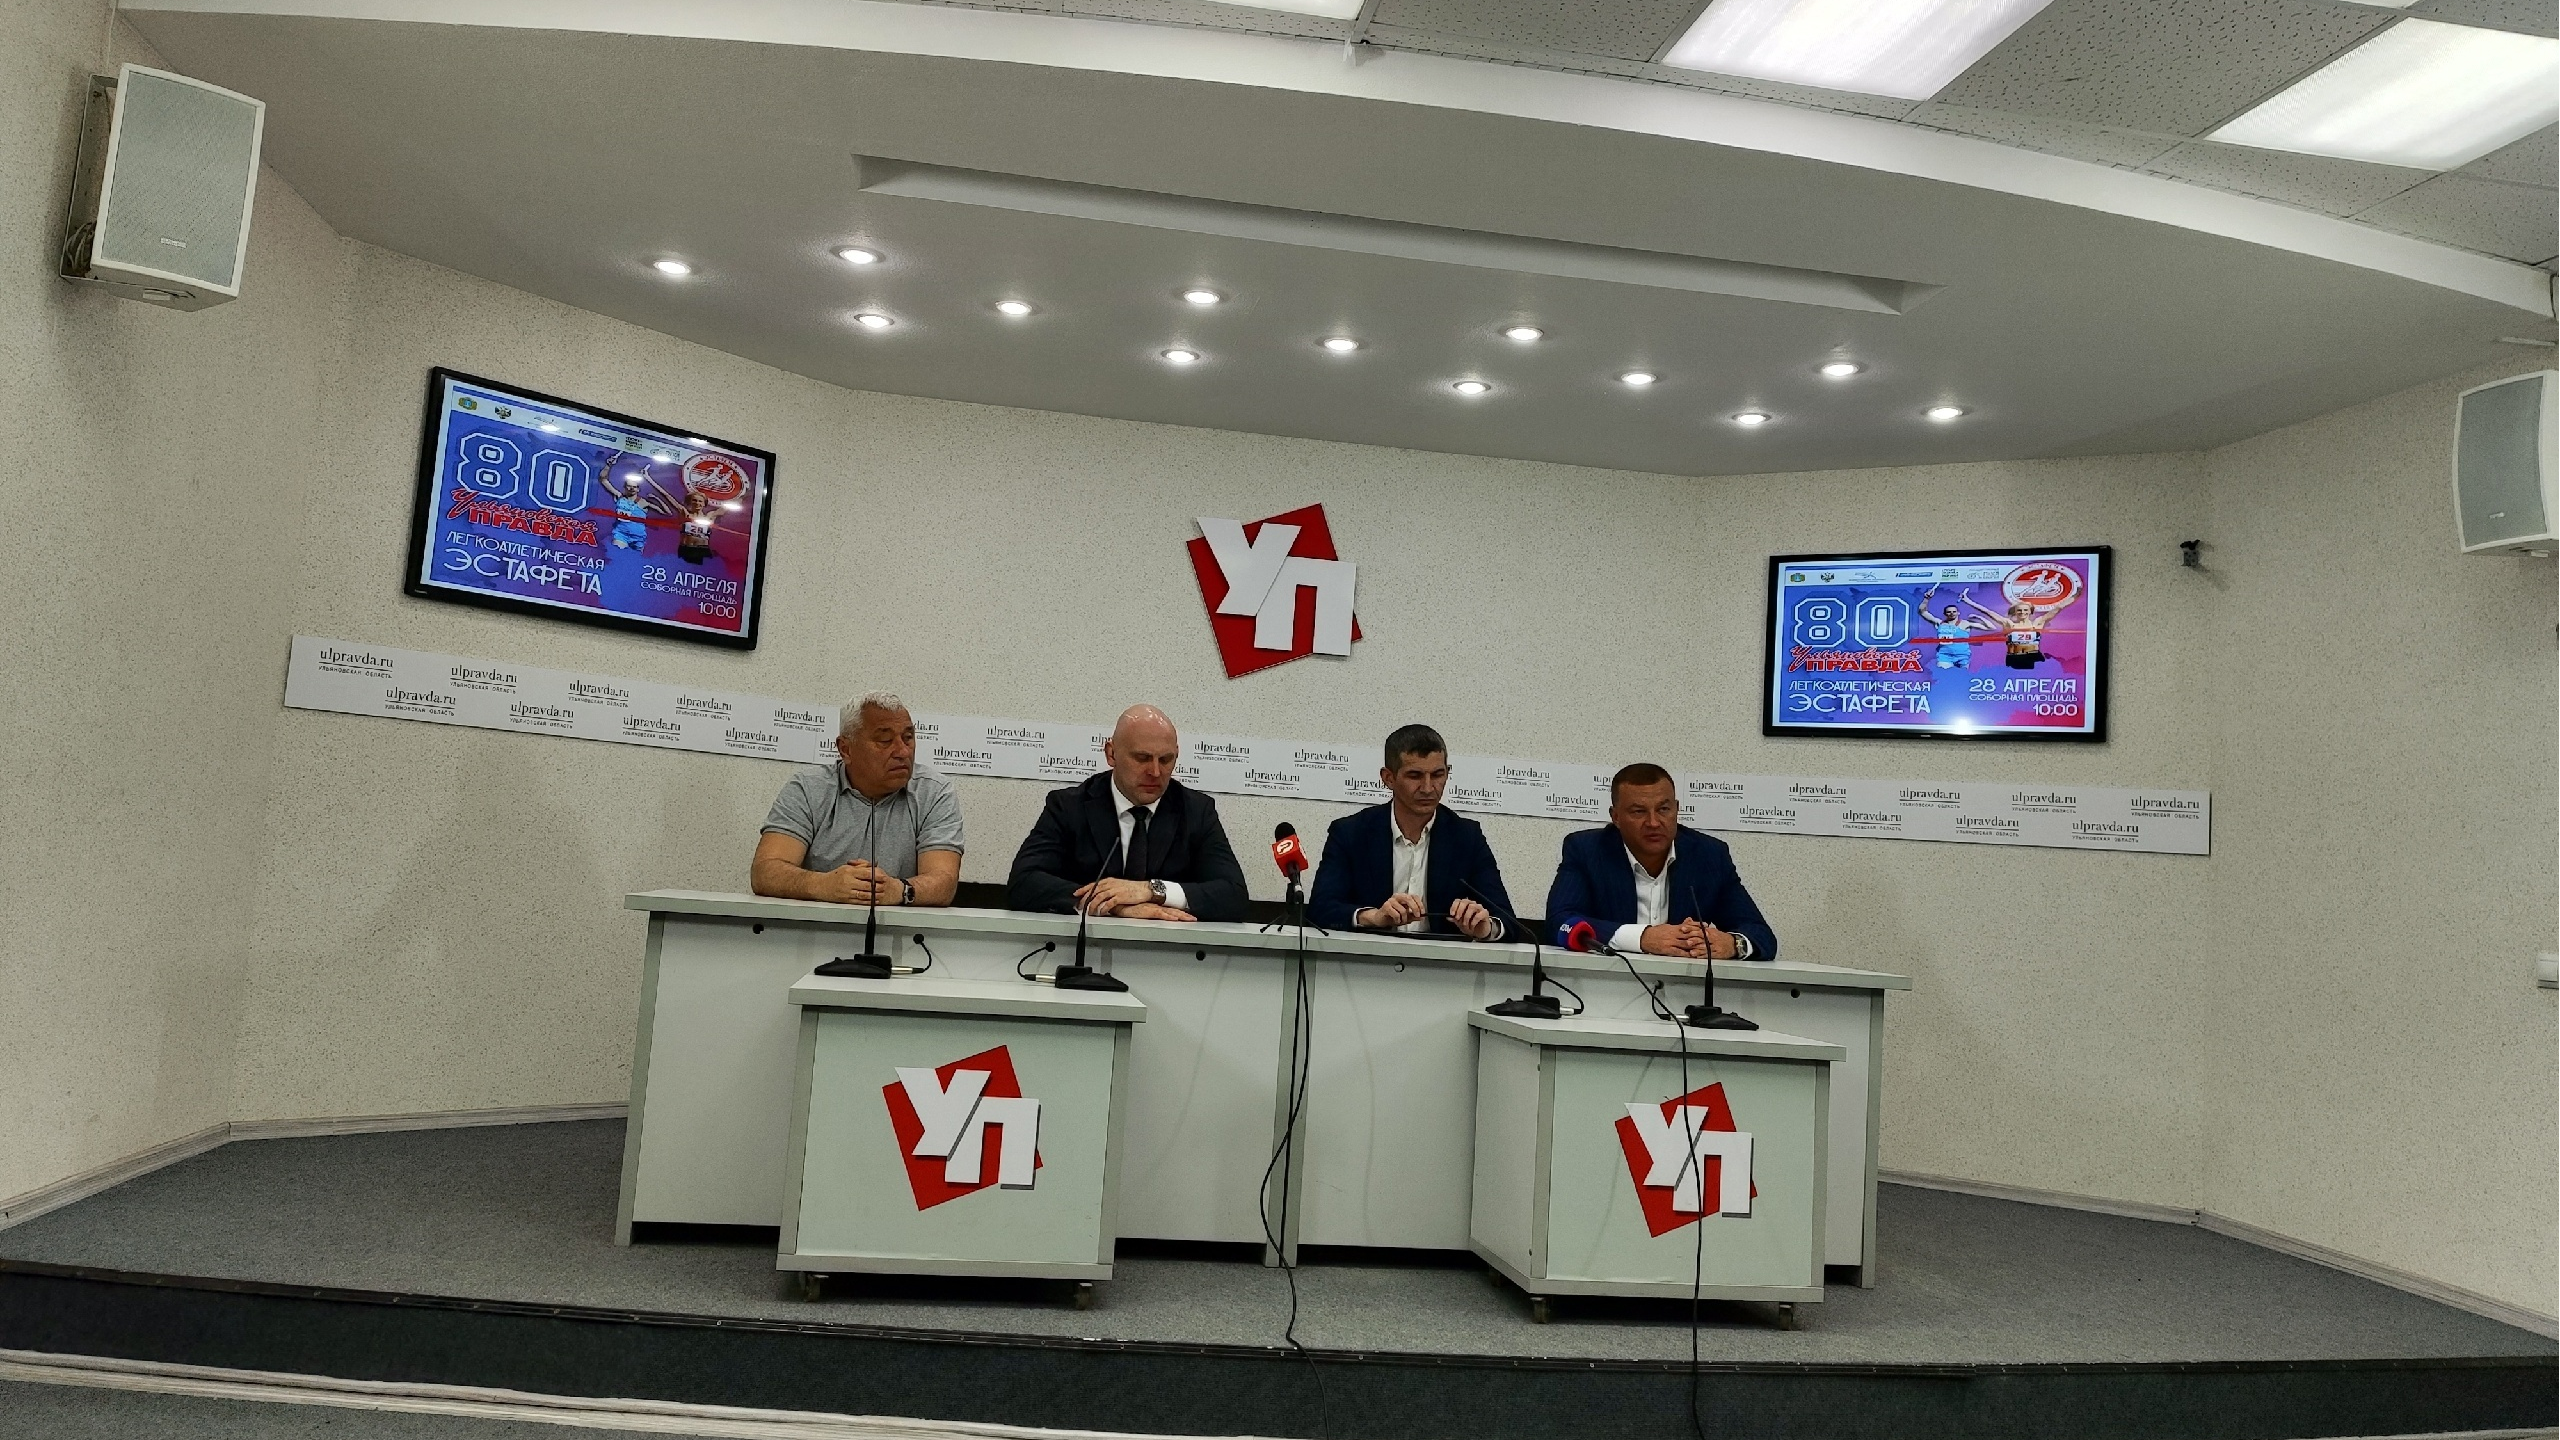 Это будет зрелищно: в Ульяновске пройдёт юбилейная эстафета, Кубок России по кикбоксингу и профессиональные бои